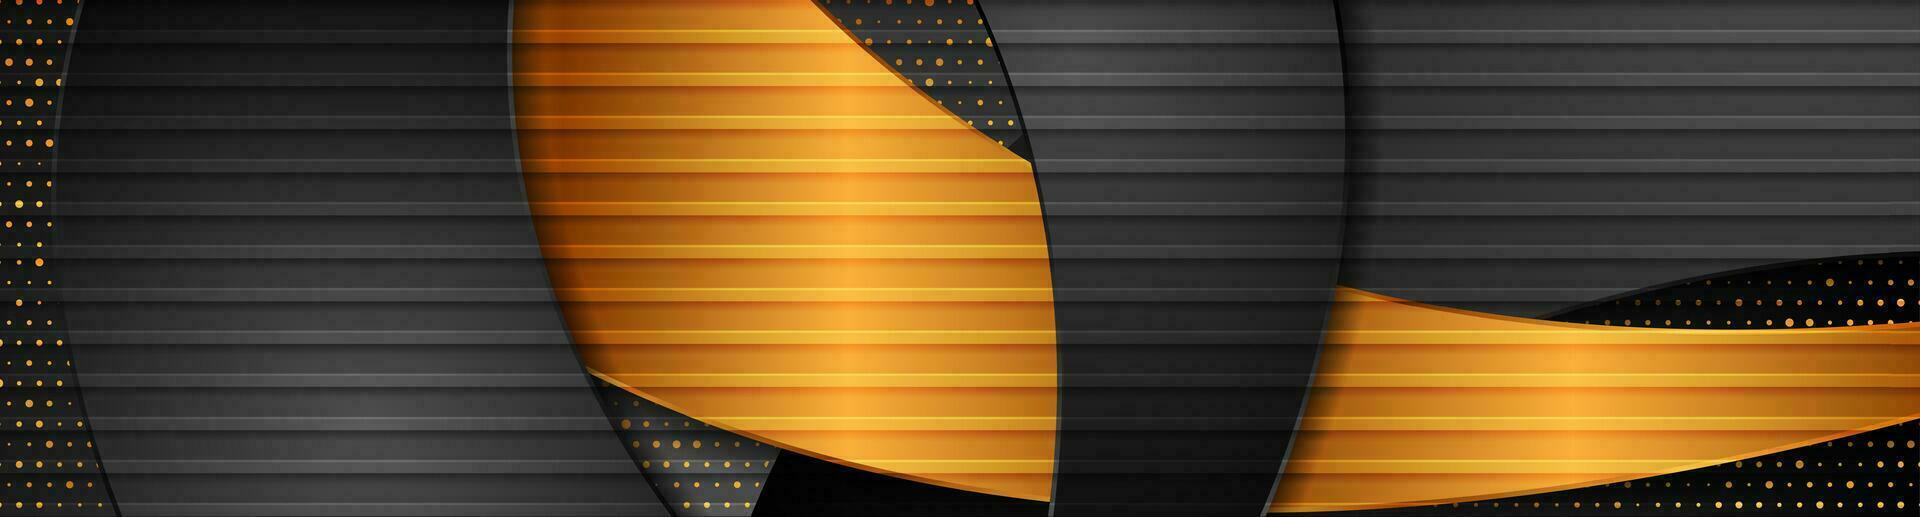 resumen moderno negro dorado bandera con olas y puntos vector